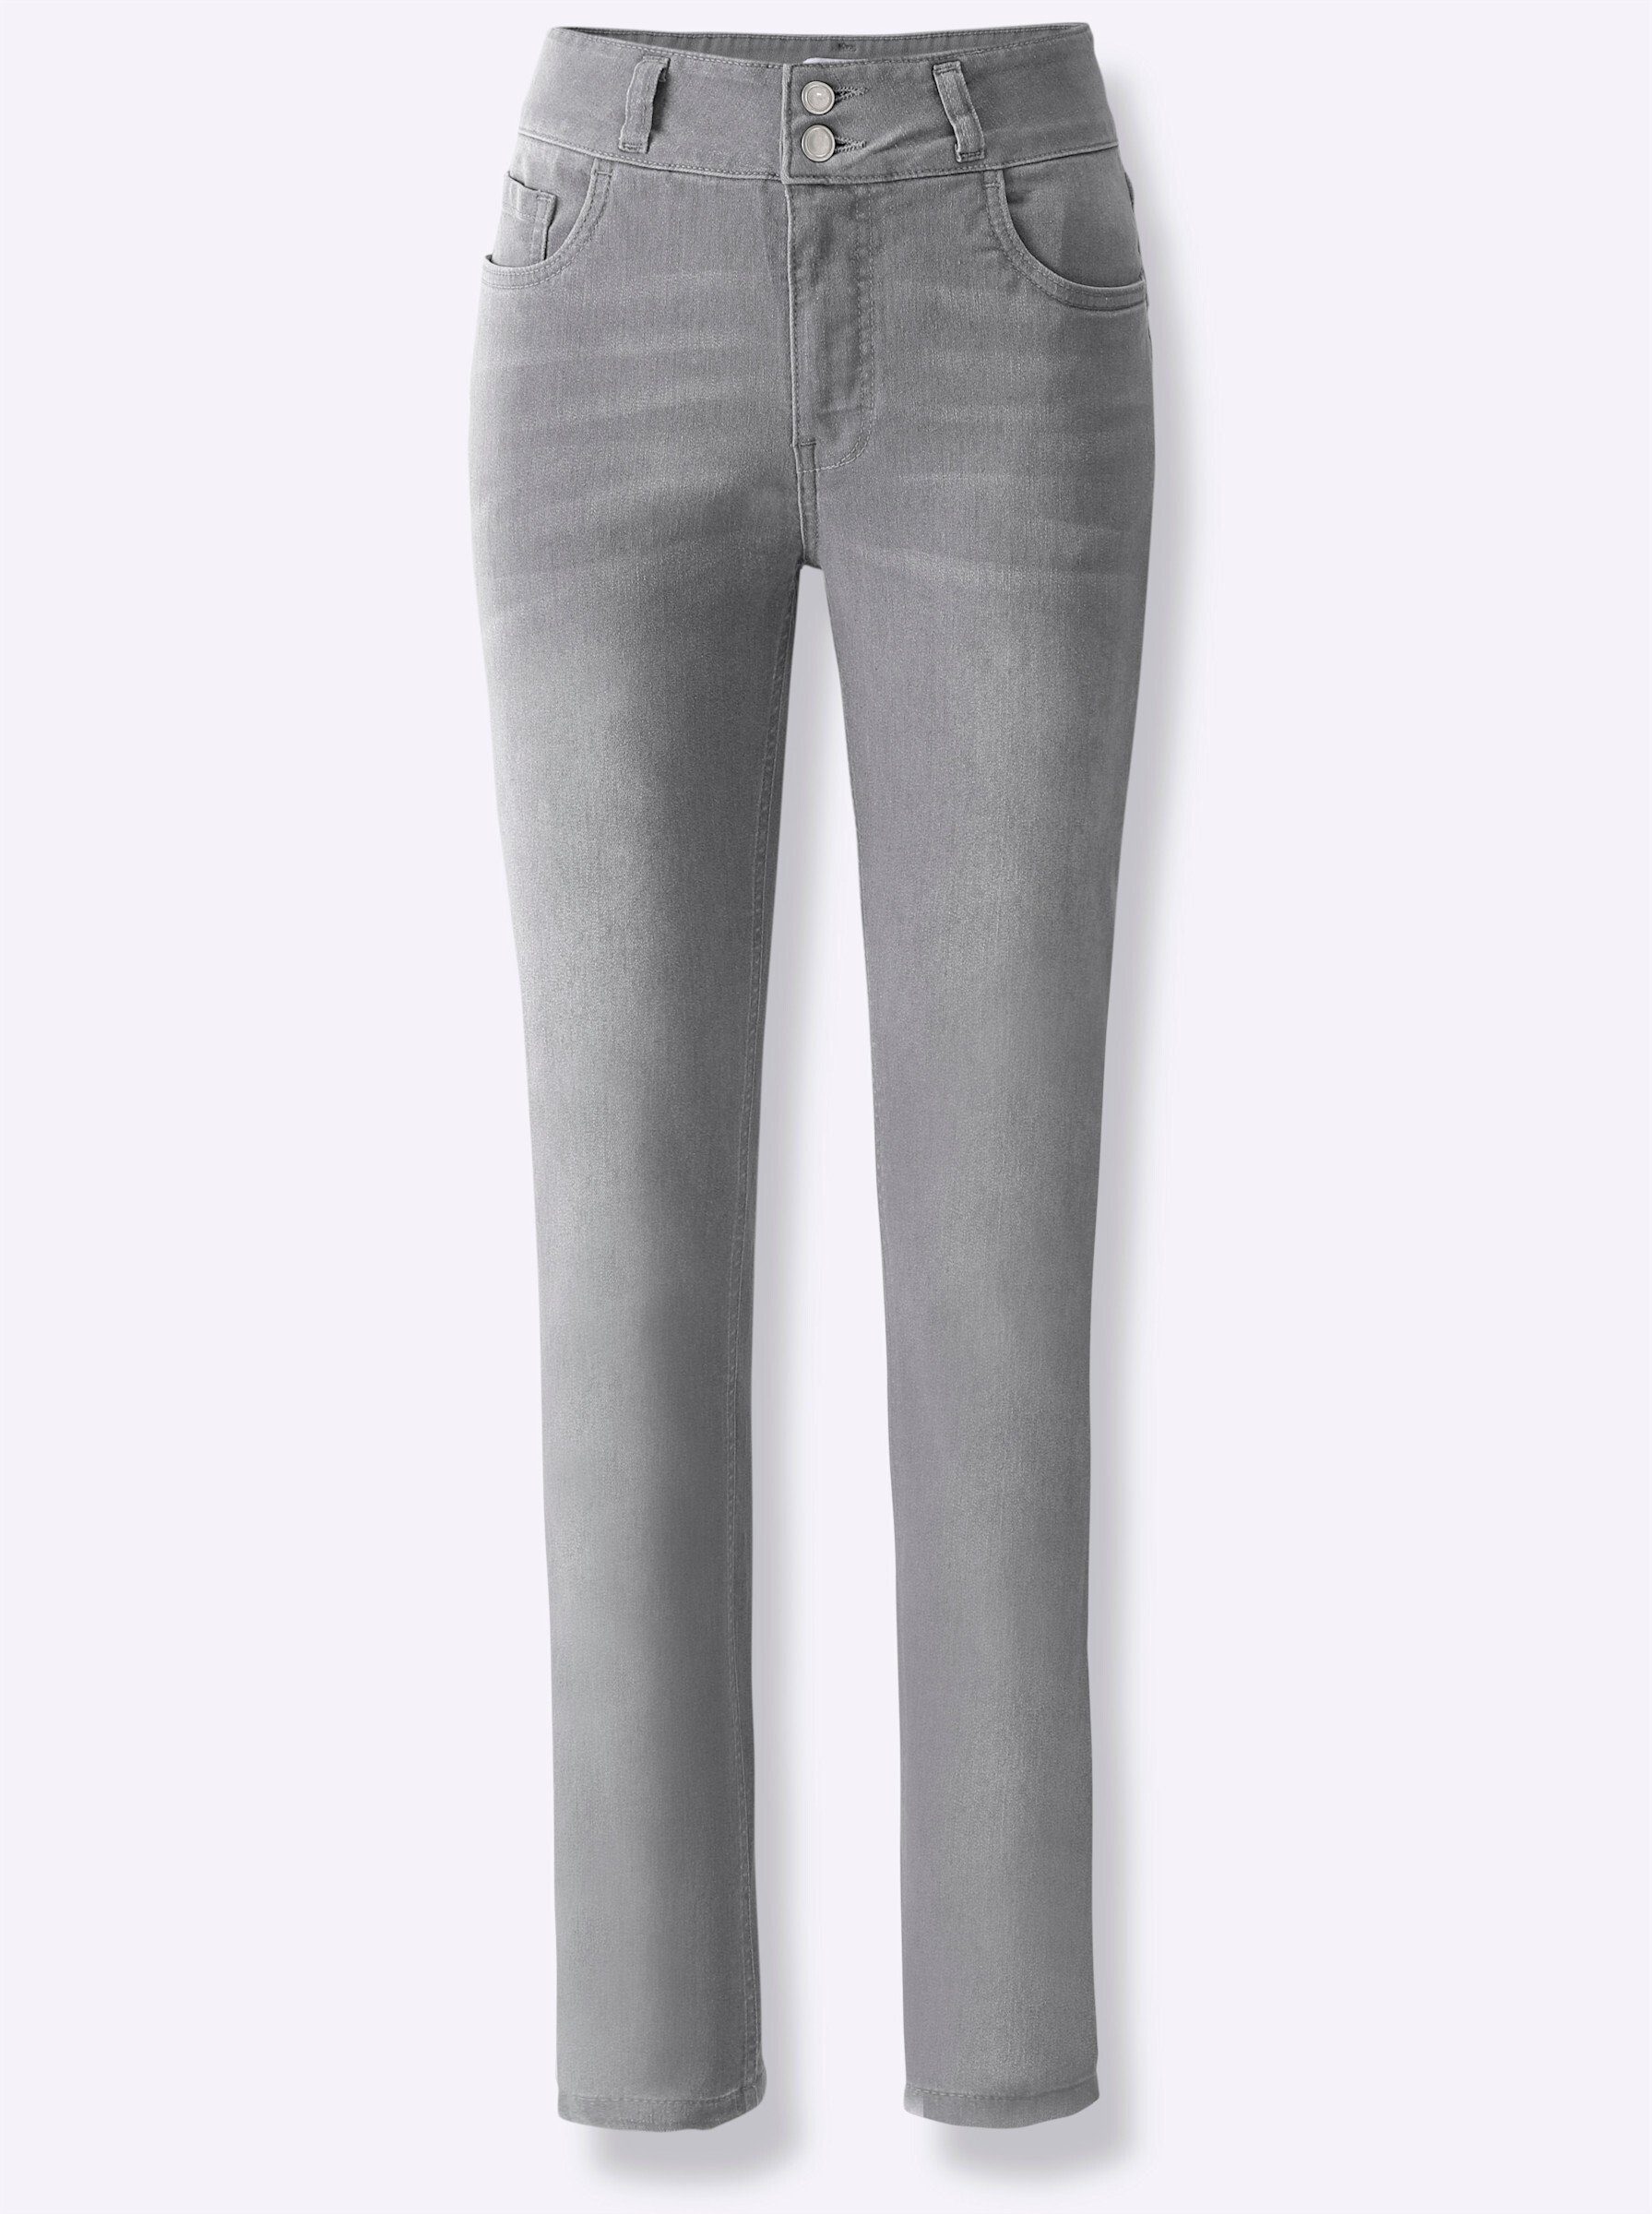 WITT WEIDEN Bequeme Jeans grey-denim light